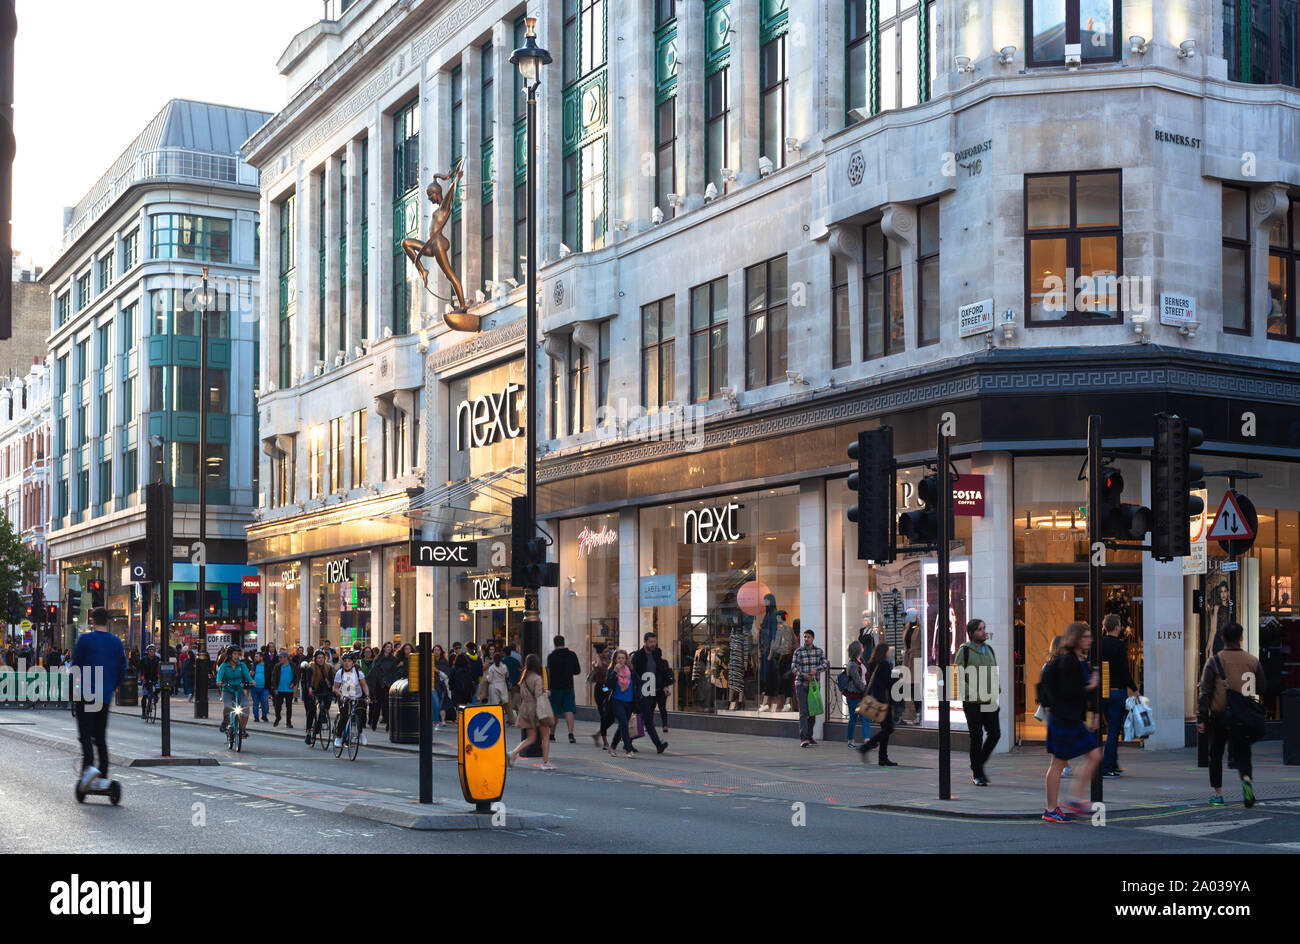 Nouveau magasin sur Oxford Street, Londres, Angleterre, Royaume-Uni. Banque D'Images